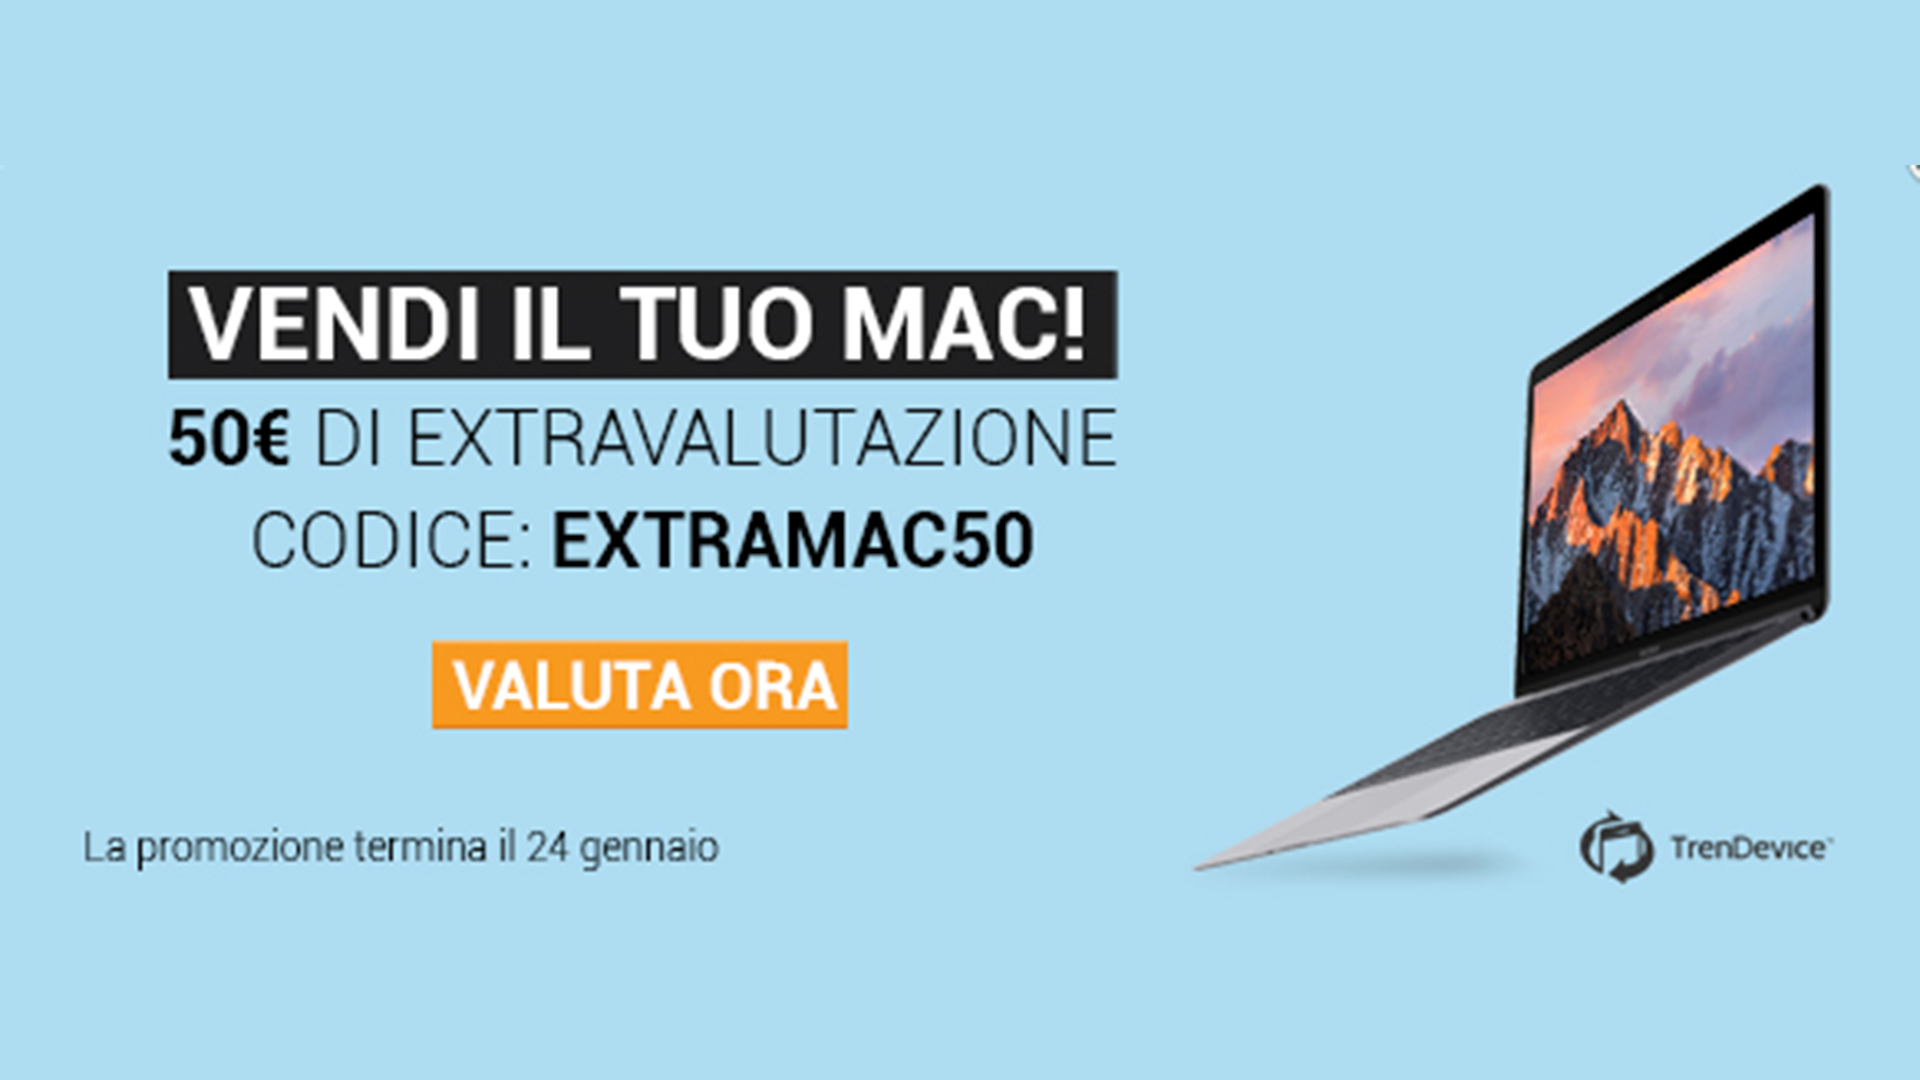 Vendi il tuo Mac usato su TrenDevice e ottieni una valutazione extra di 50 Euro